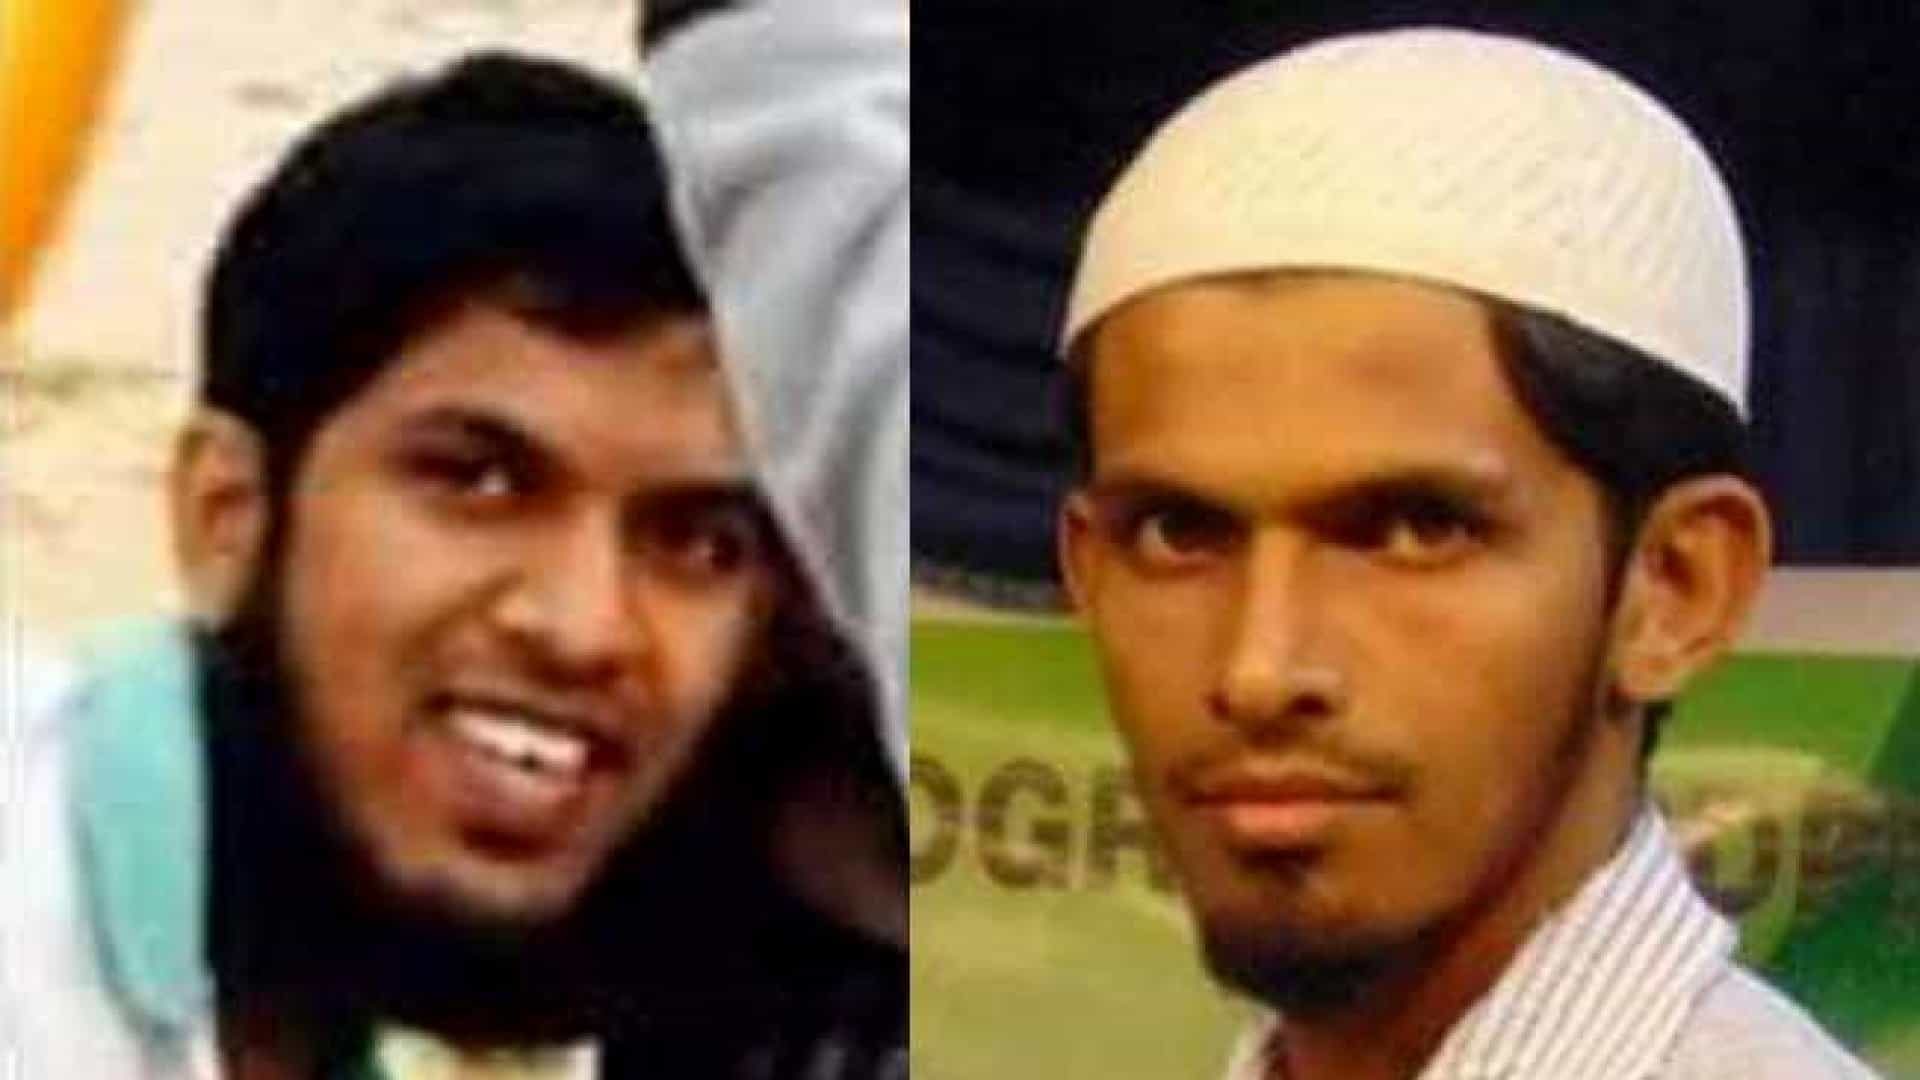 ALERTA | Detidos os 2 principais suspeitos dos atentados no Sri Lanka